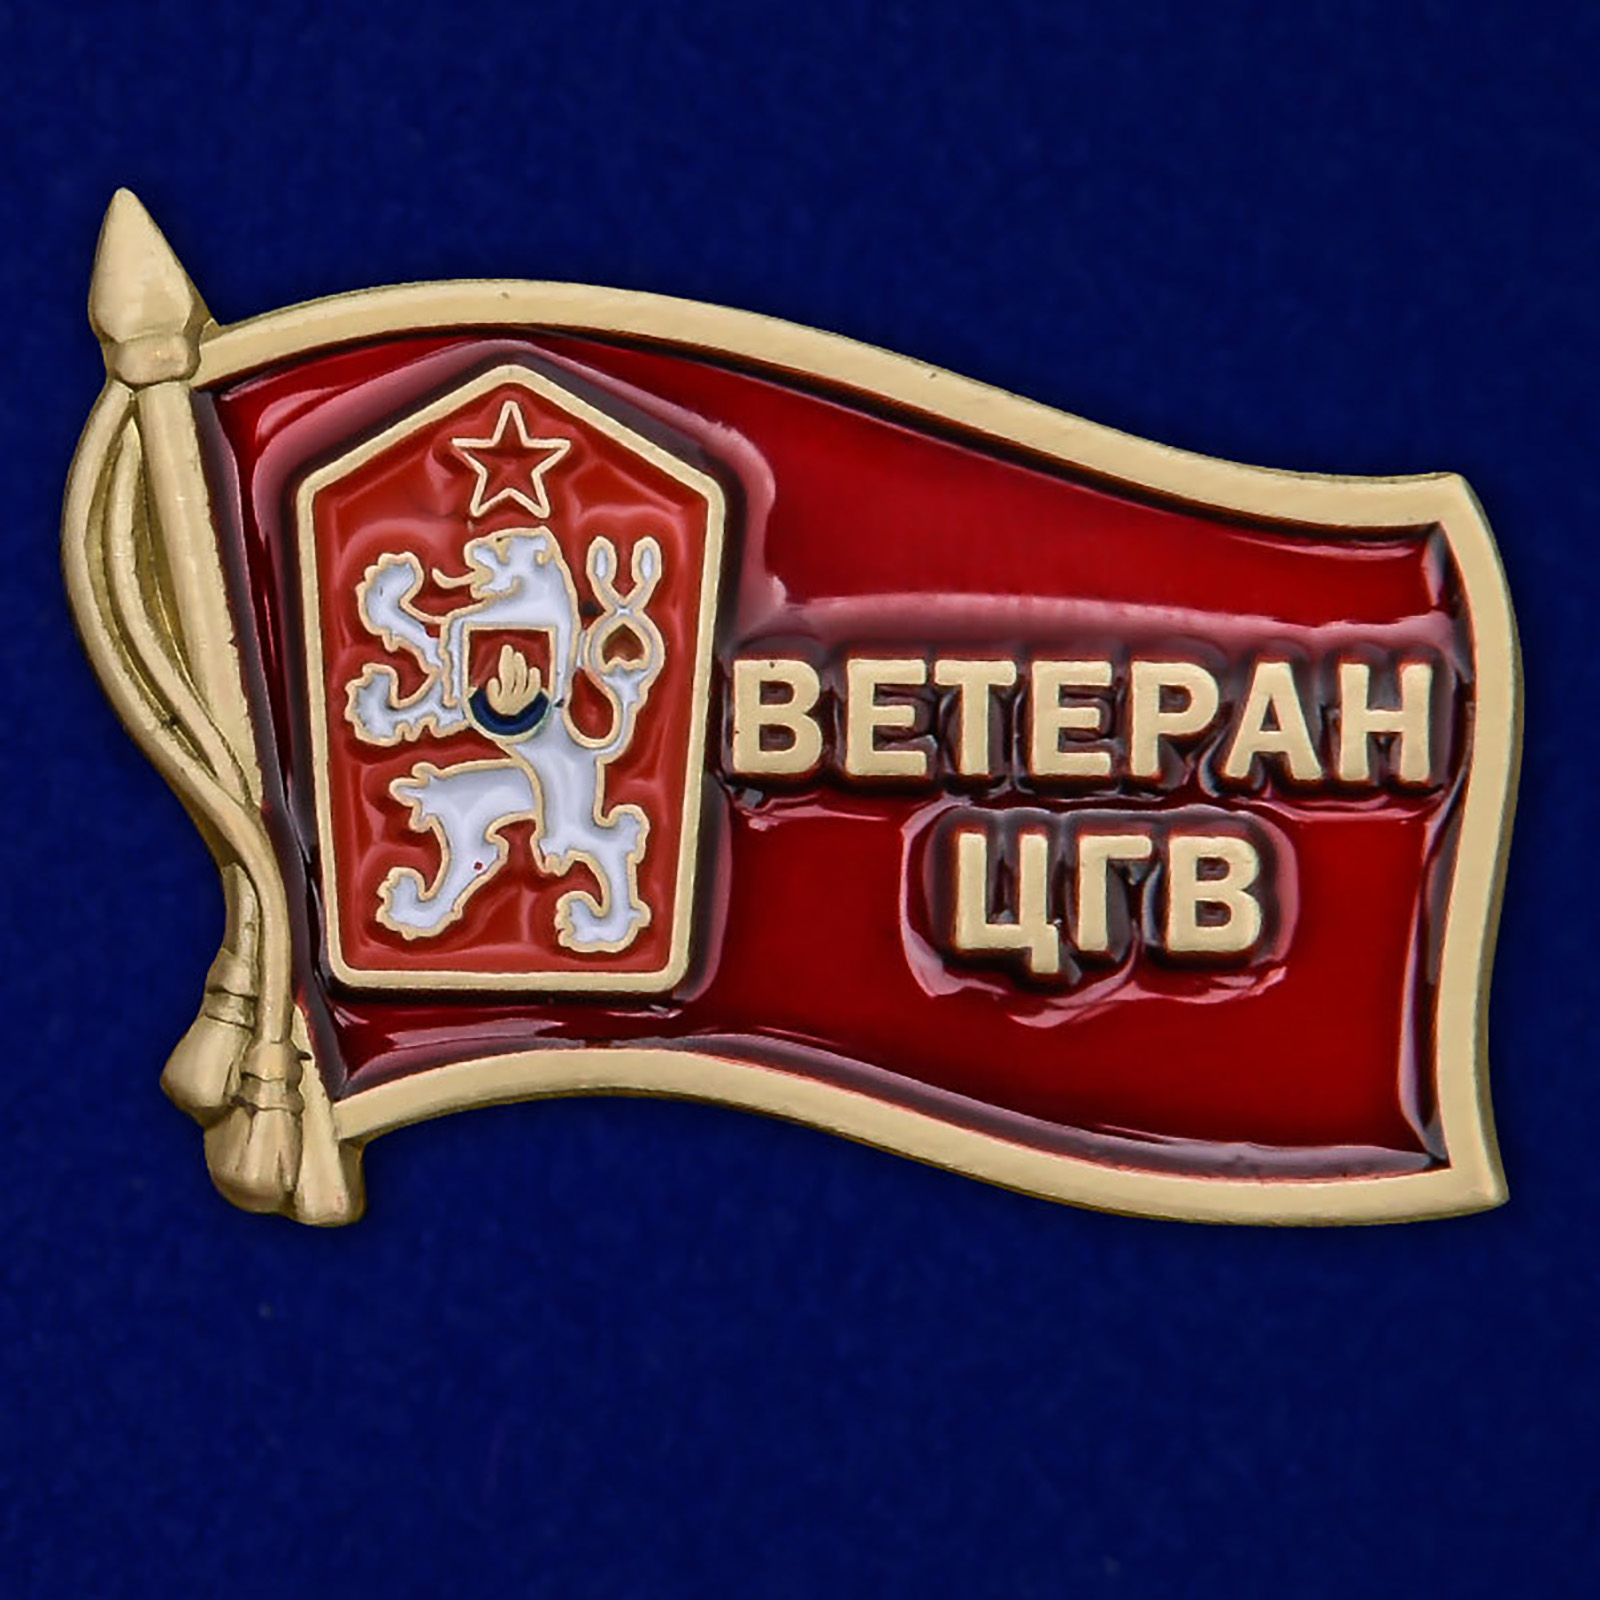 Значок "Ветеран ЦГВ" на память о службе в Чехословакии